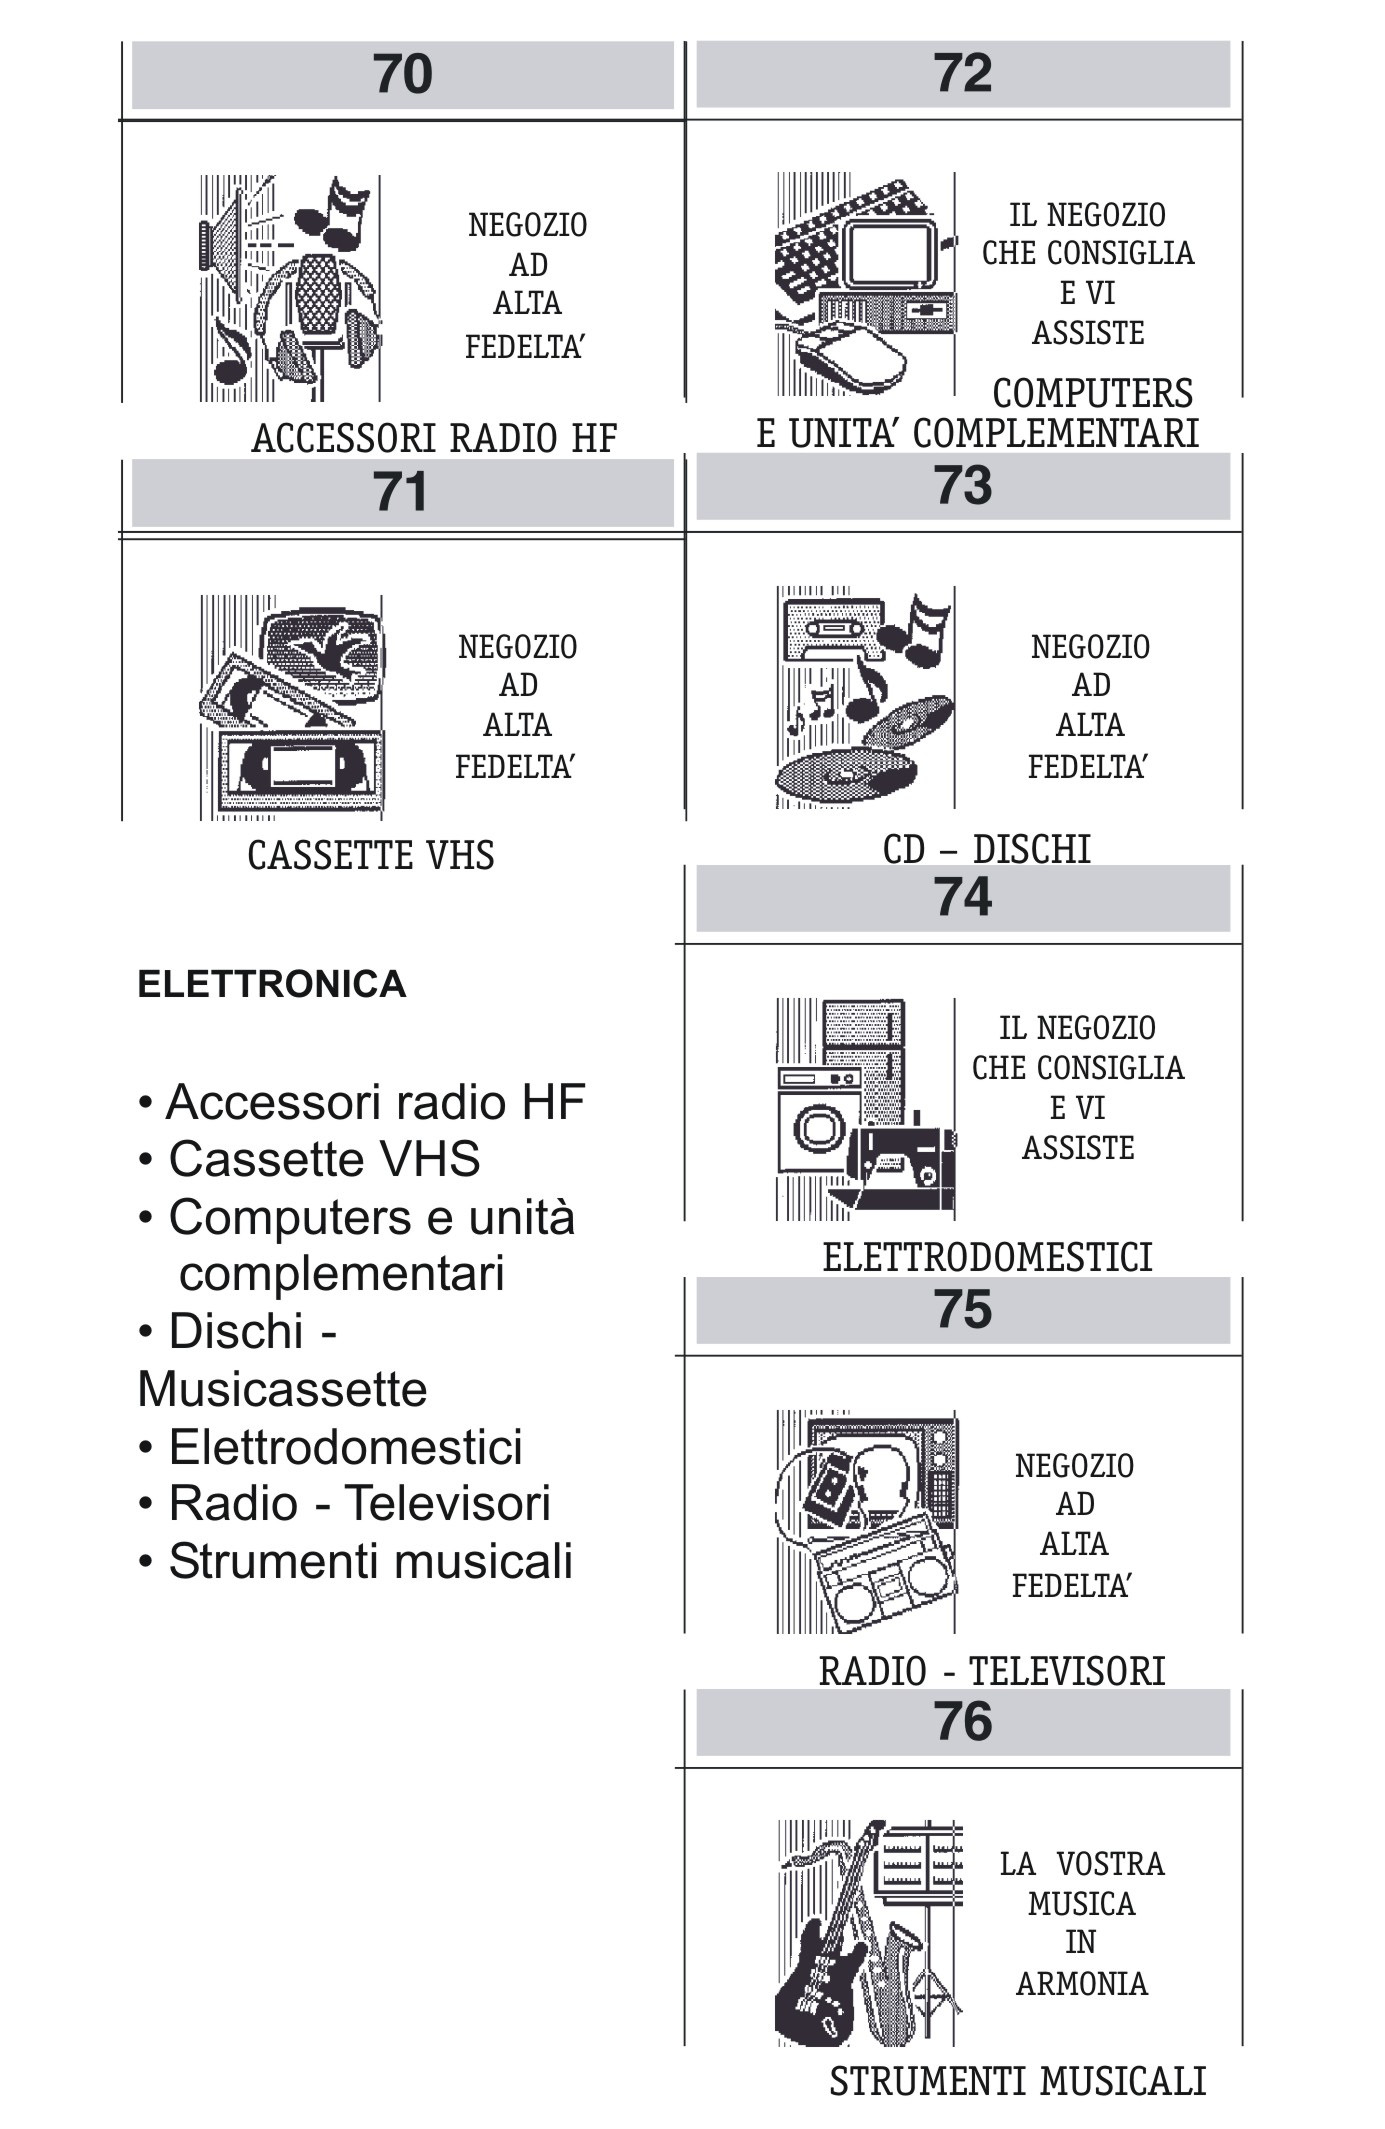 IL NEGOZIO CHE CONSIGLIA E ASSISTE ELETTRONICA Accessori radio HF Cassette VHS Computers e unità complementari